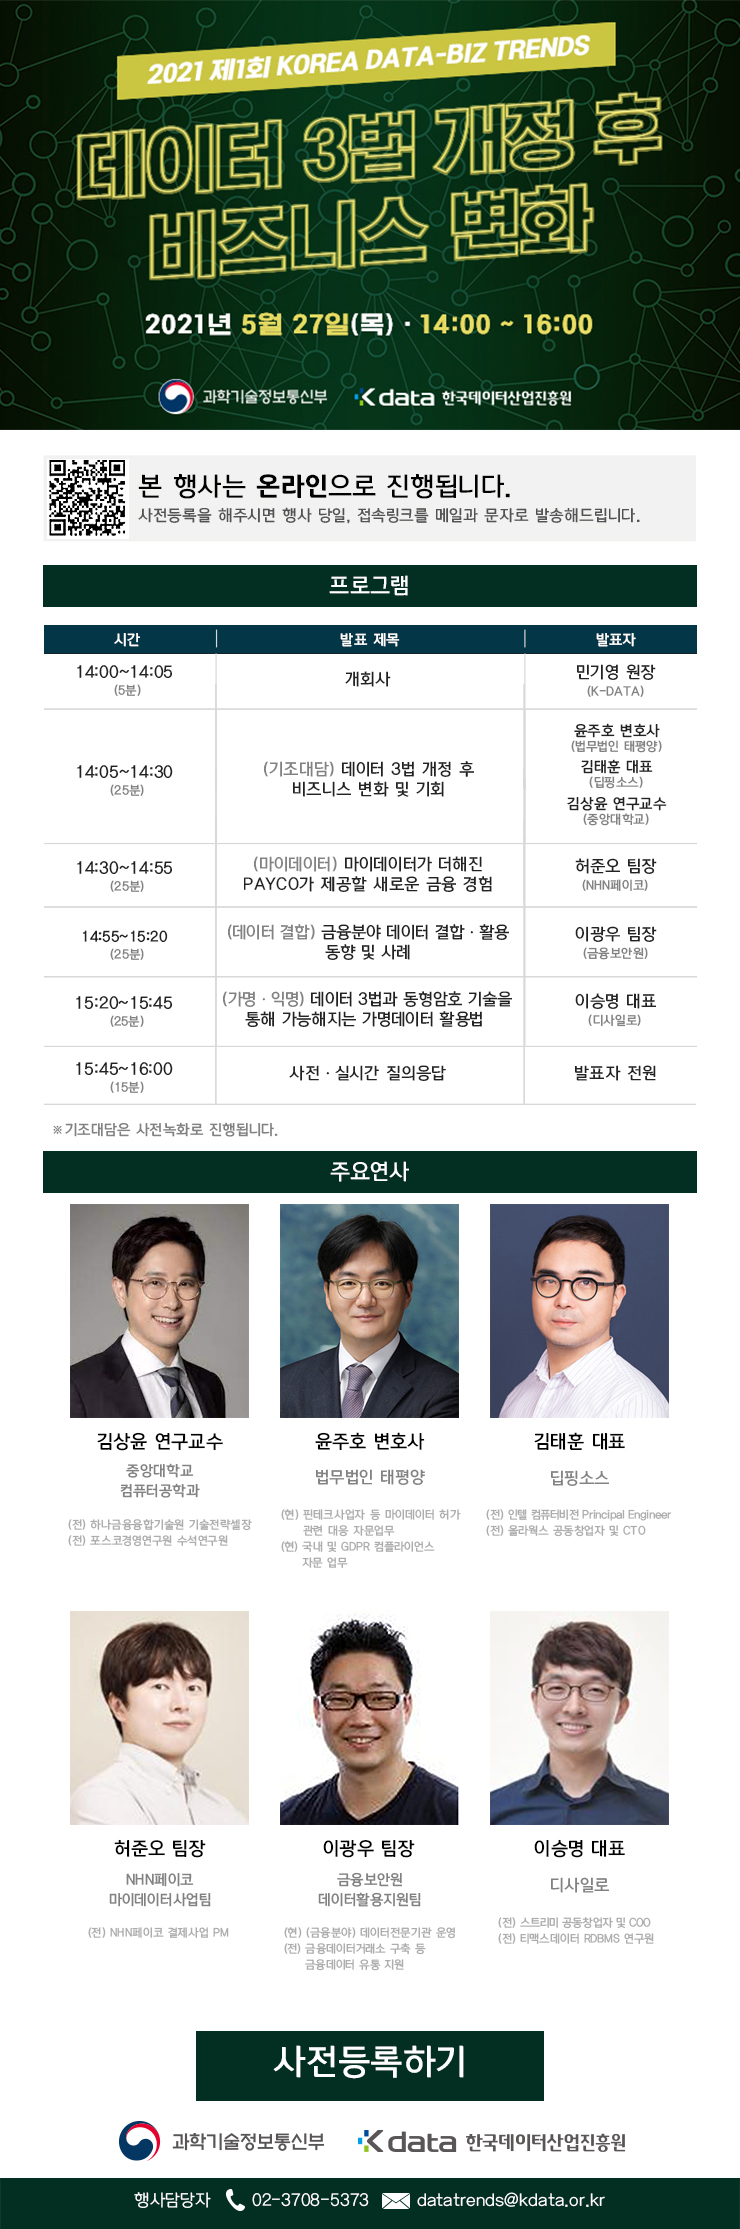 (과학기술정보통신부)2021 제1회 KOREA DATA-BIZ TRENDS 행사 이미지